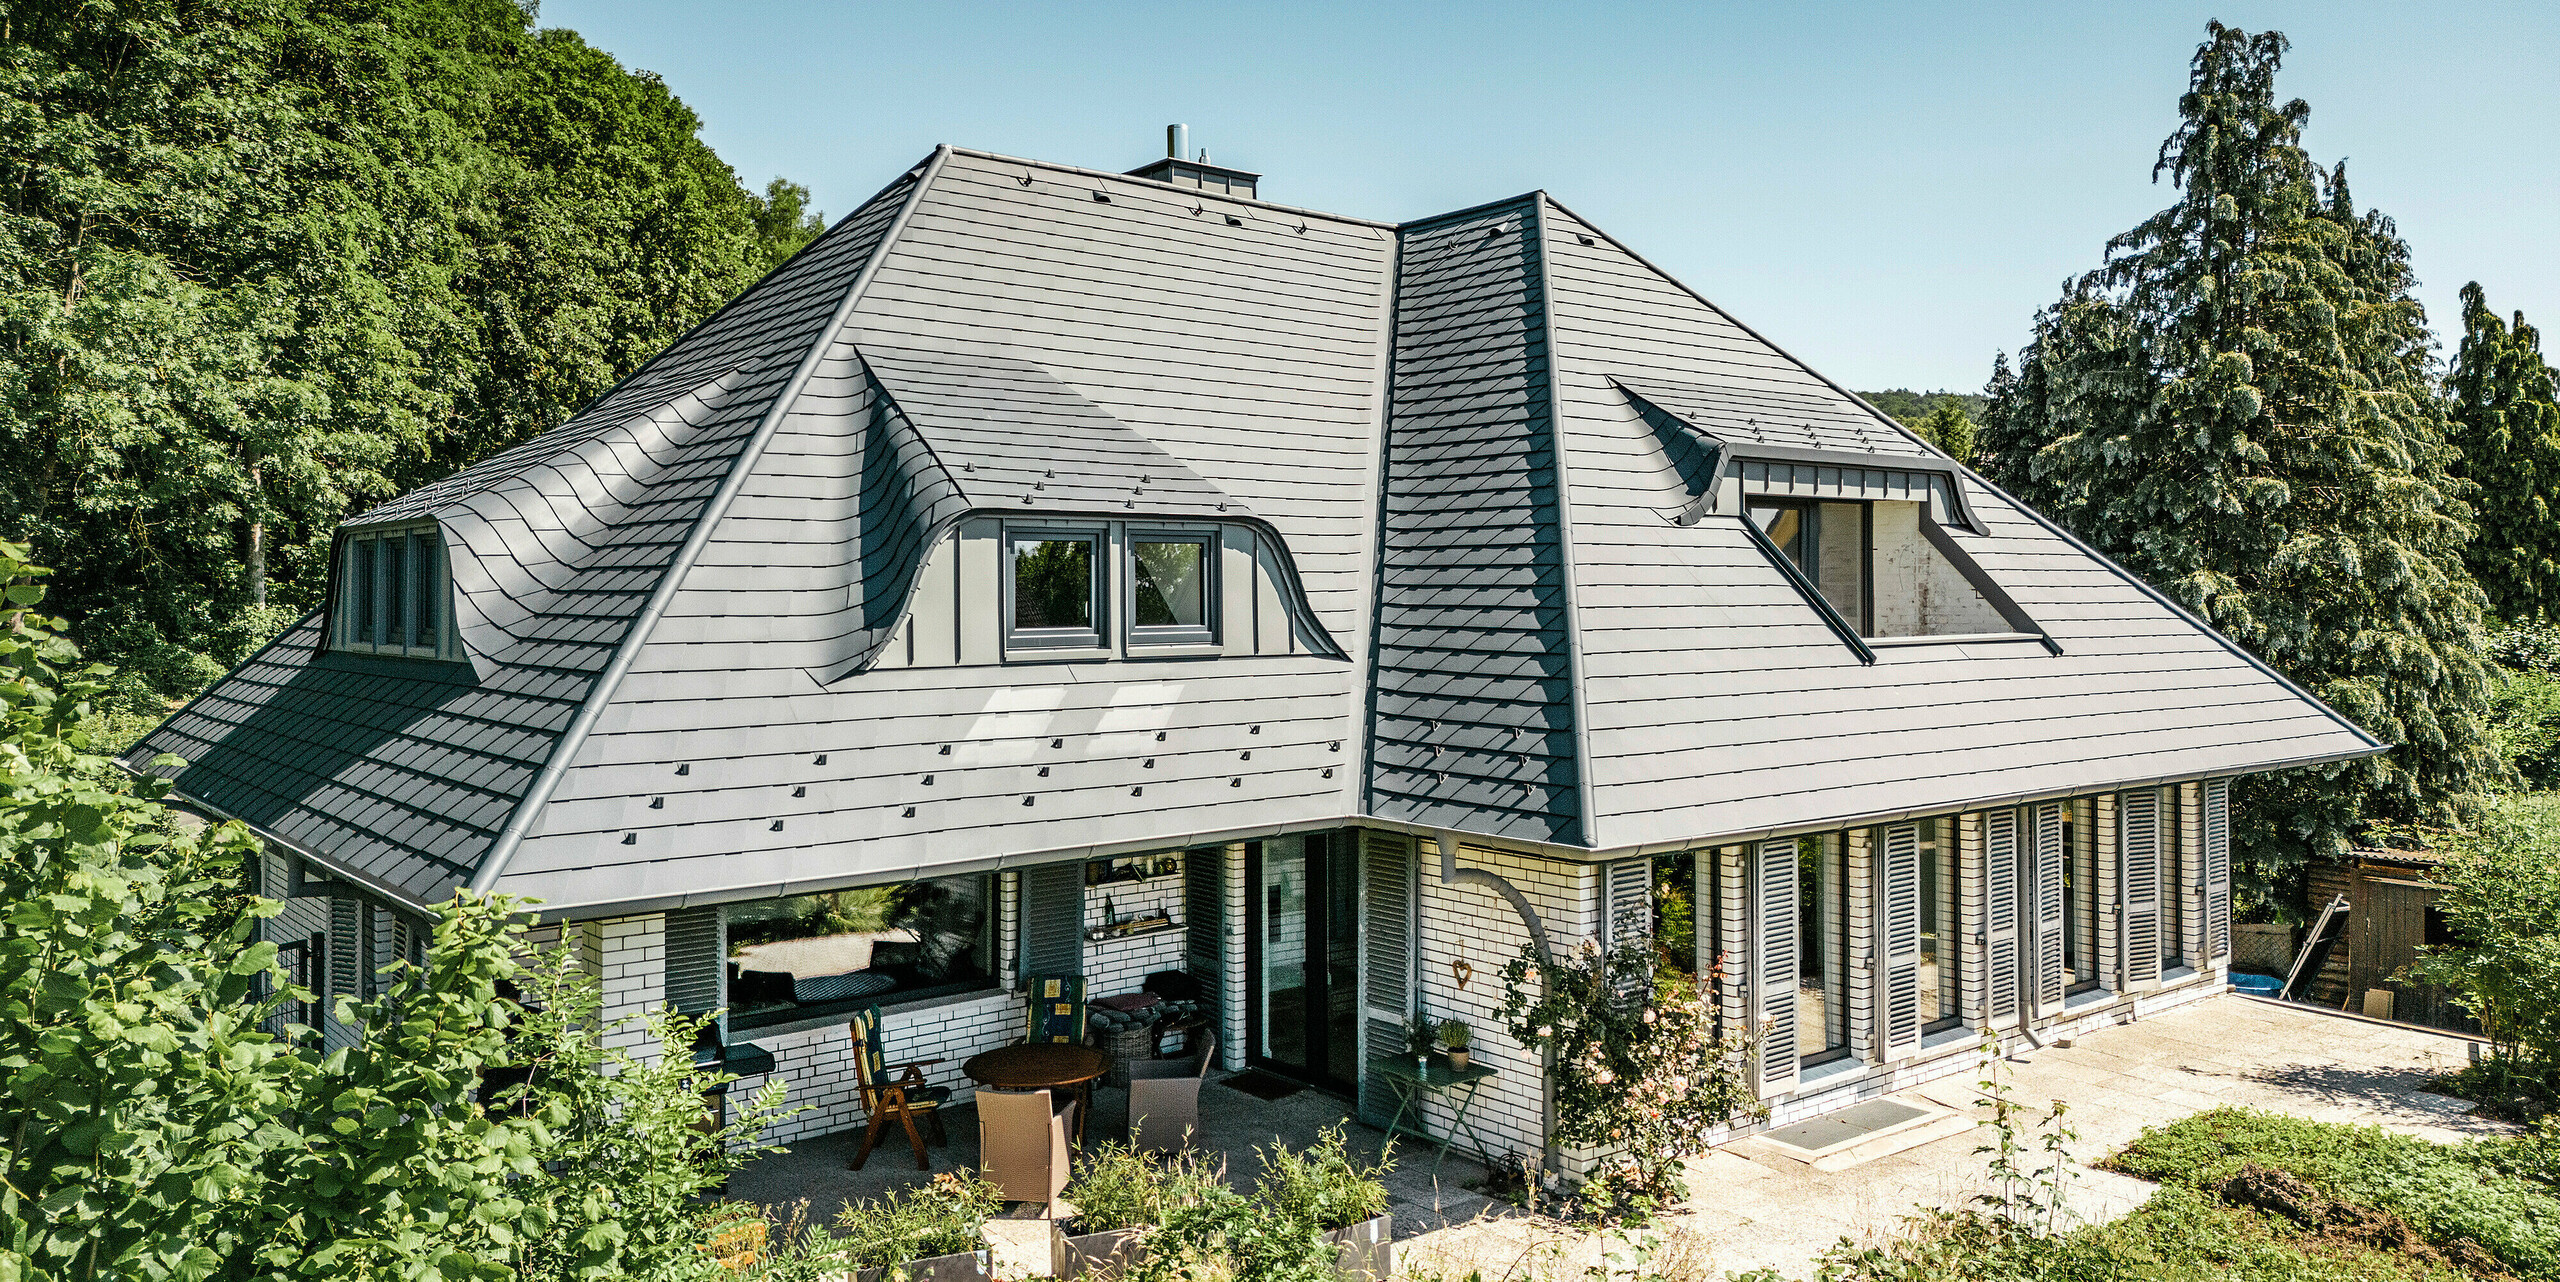 Modernes Einfamilienhaus in Einbeck, Deutschland, mit PREFA Dachschindeln in P.10 Anthrazit. Die langlebigen PREFA Dachschindeln aus Aluminium sind für ihre Qualität und Langlebigkeit bekannt. Die Dachgestaltung des Gebäudes betont die individuelle Architektur mit Hechtgauben, die durch die Flexibilität der PREFA Dachschindeln hervorgehoben wird. Die Dachentwässerung in Form des PREFA Ablaufrohrs bzw. der Hängerinne ist ebenfalls in Anthrazit gehalten. Rund um das Einfamilienhaus ist ein großzügiger und gepflegter Garten sowie eine Terrasse zu sehen. Hinter dem Haus liegt ein Wald, der - gemeinsam mit dem blauen Himmel - eine natürliche Atmosphäre schafft. 